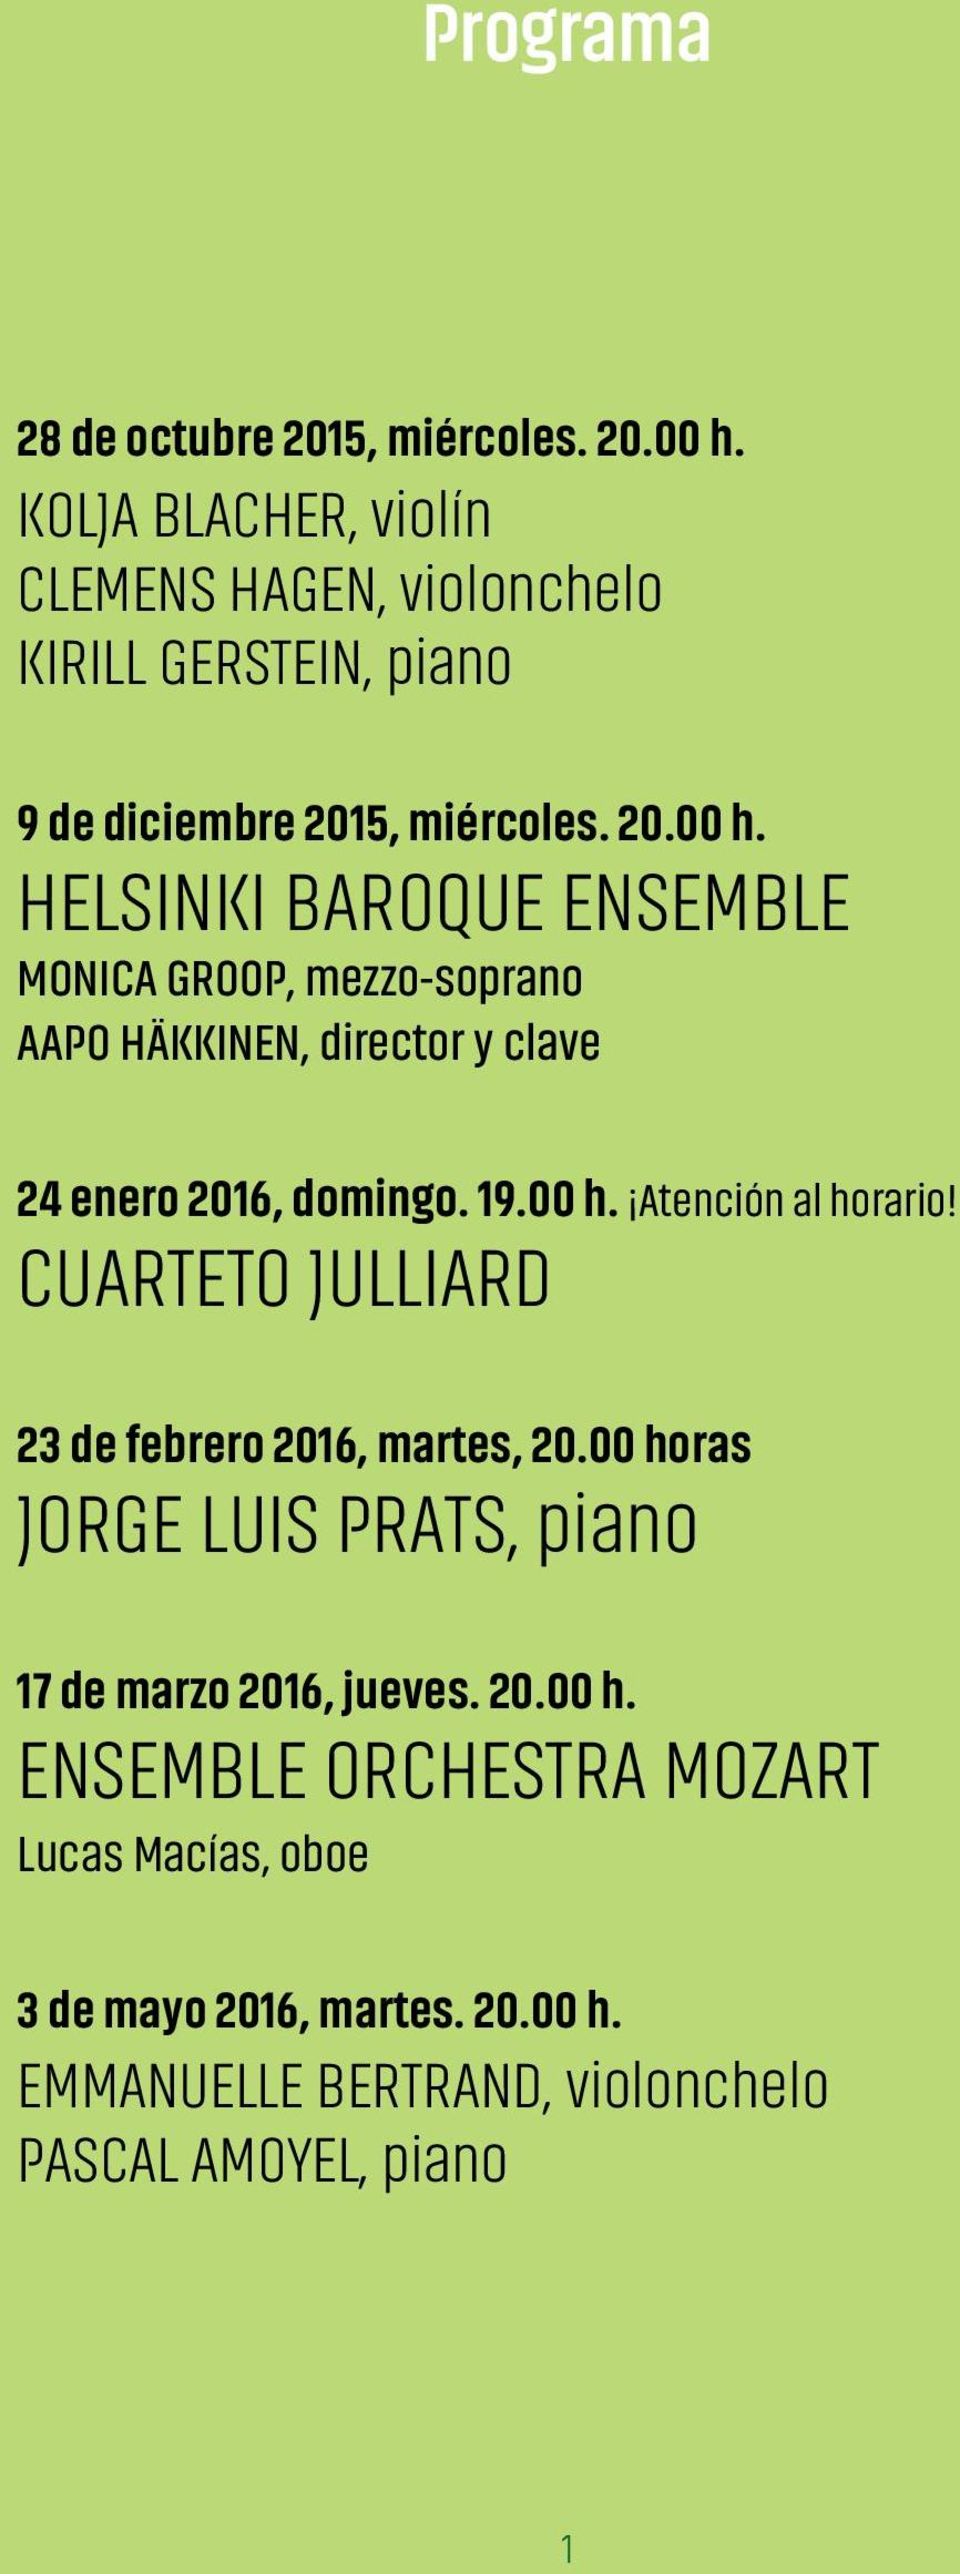 HELSINKI BAROQUE ENSEMBLE MONICA GROOP, mezzo-soprano AAPO HÄKKINEN, director y clave 24 enero 2016, domingo. 19.00 h.